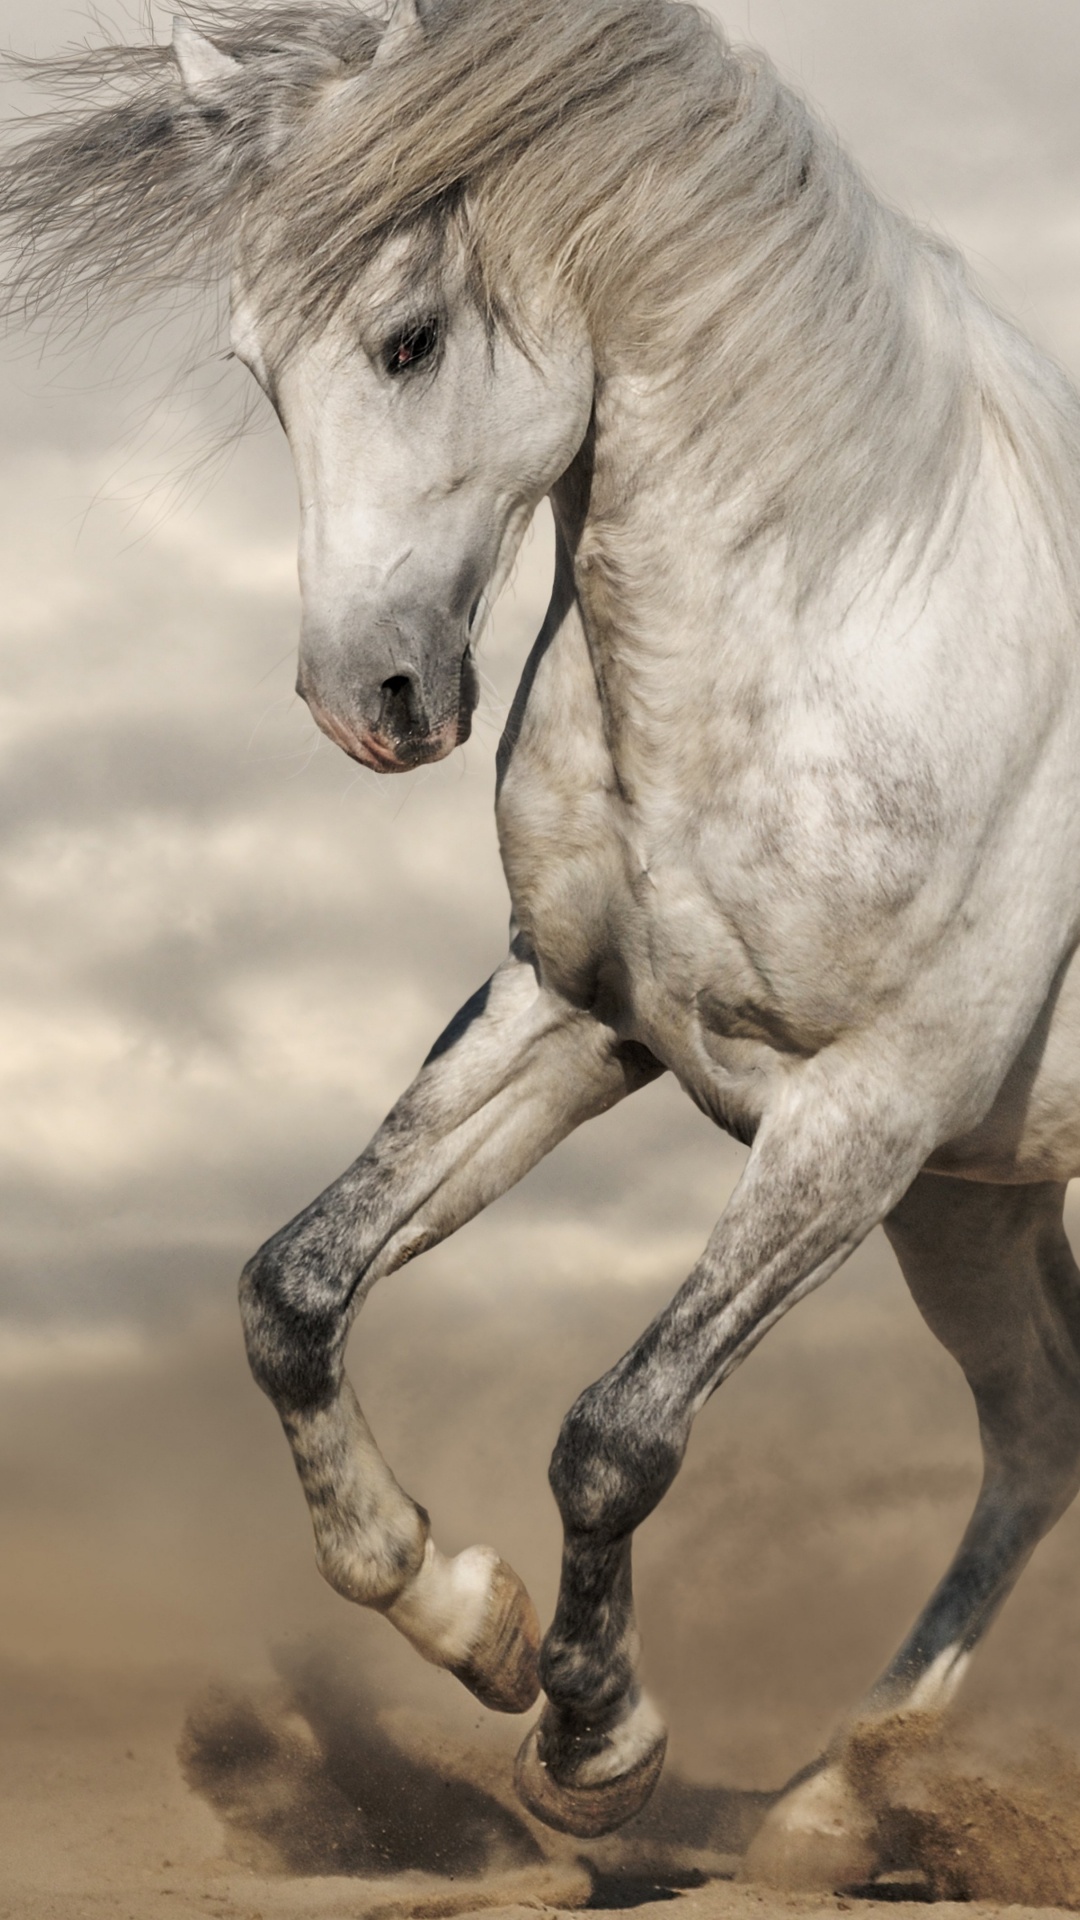 Weißes Pferd, Das Tagsüber Auf Braunem Sand Läuft. Wallpaper in 1080x1920 Resolution